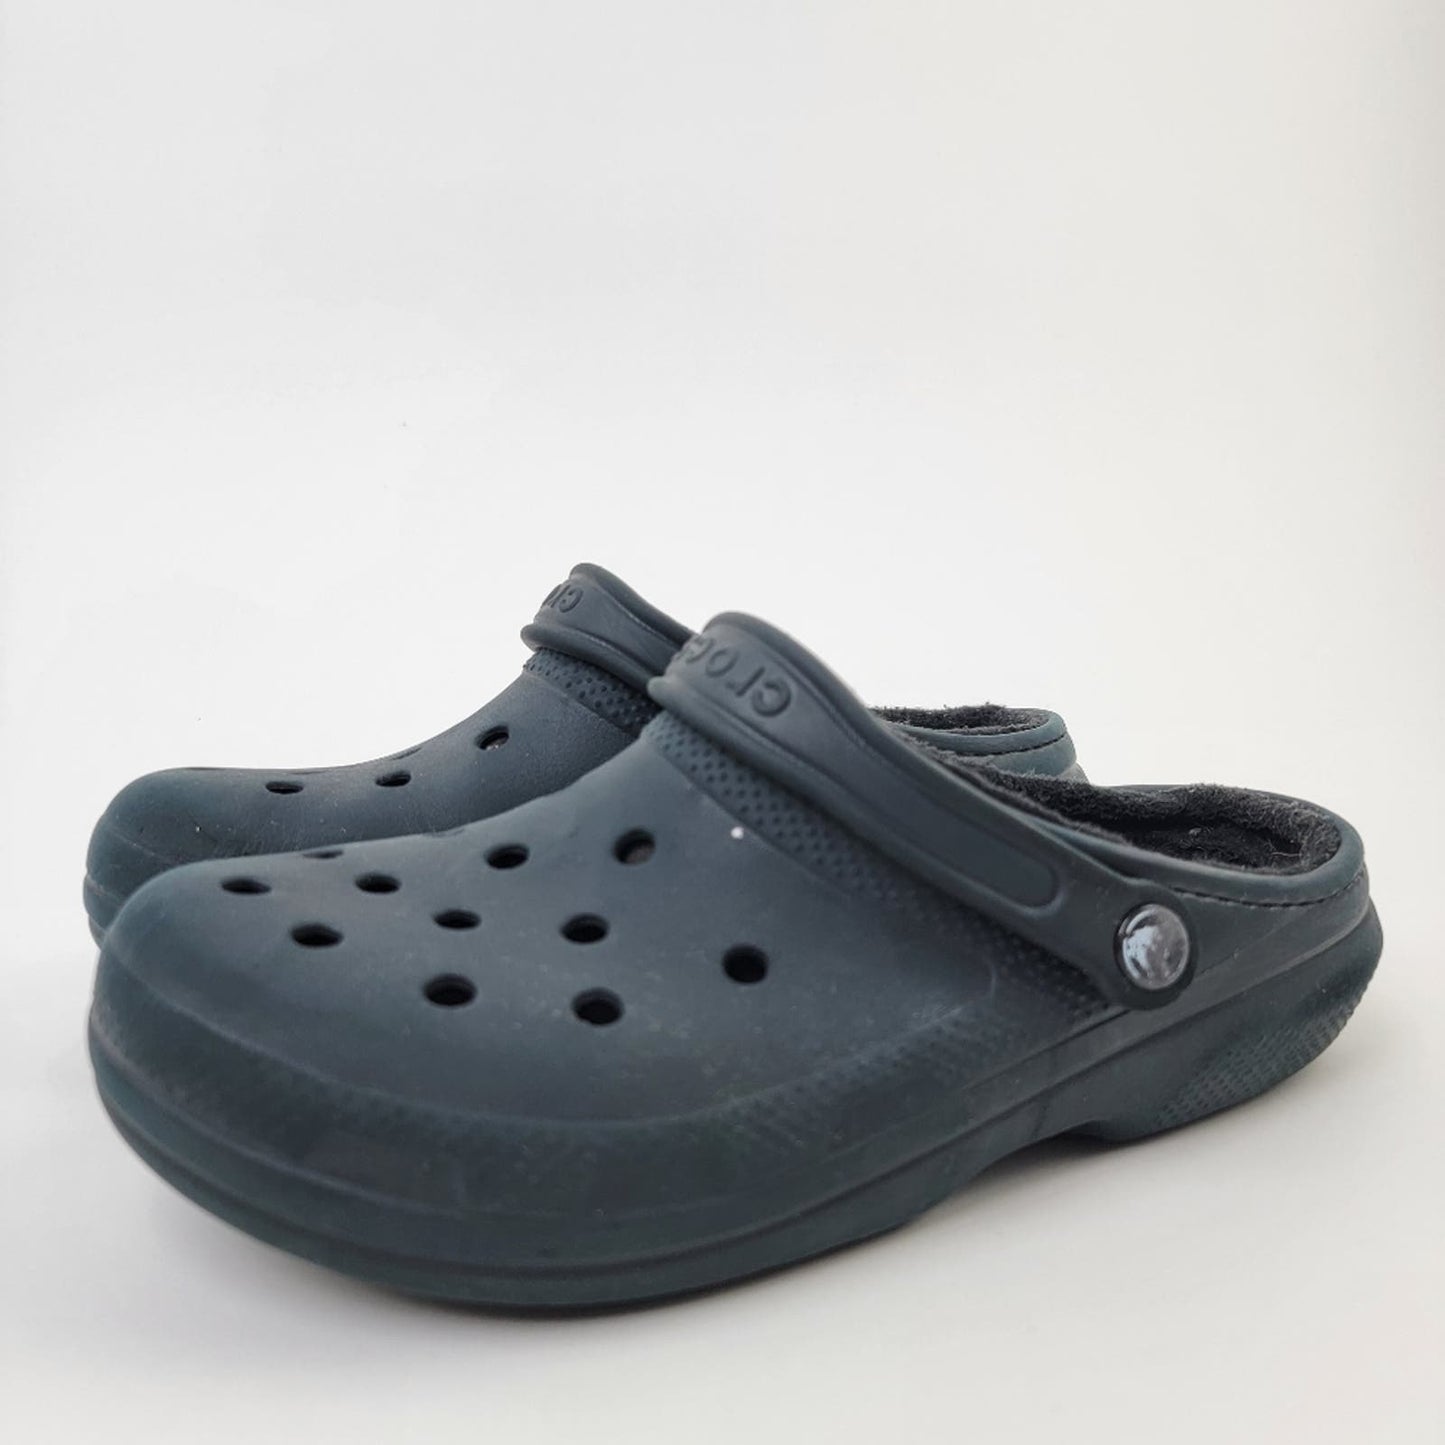 Classic Black Lined Crocs - 9